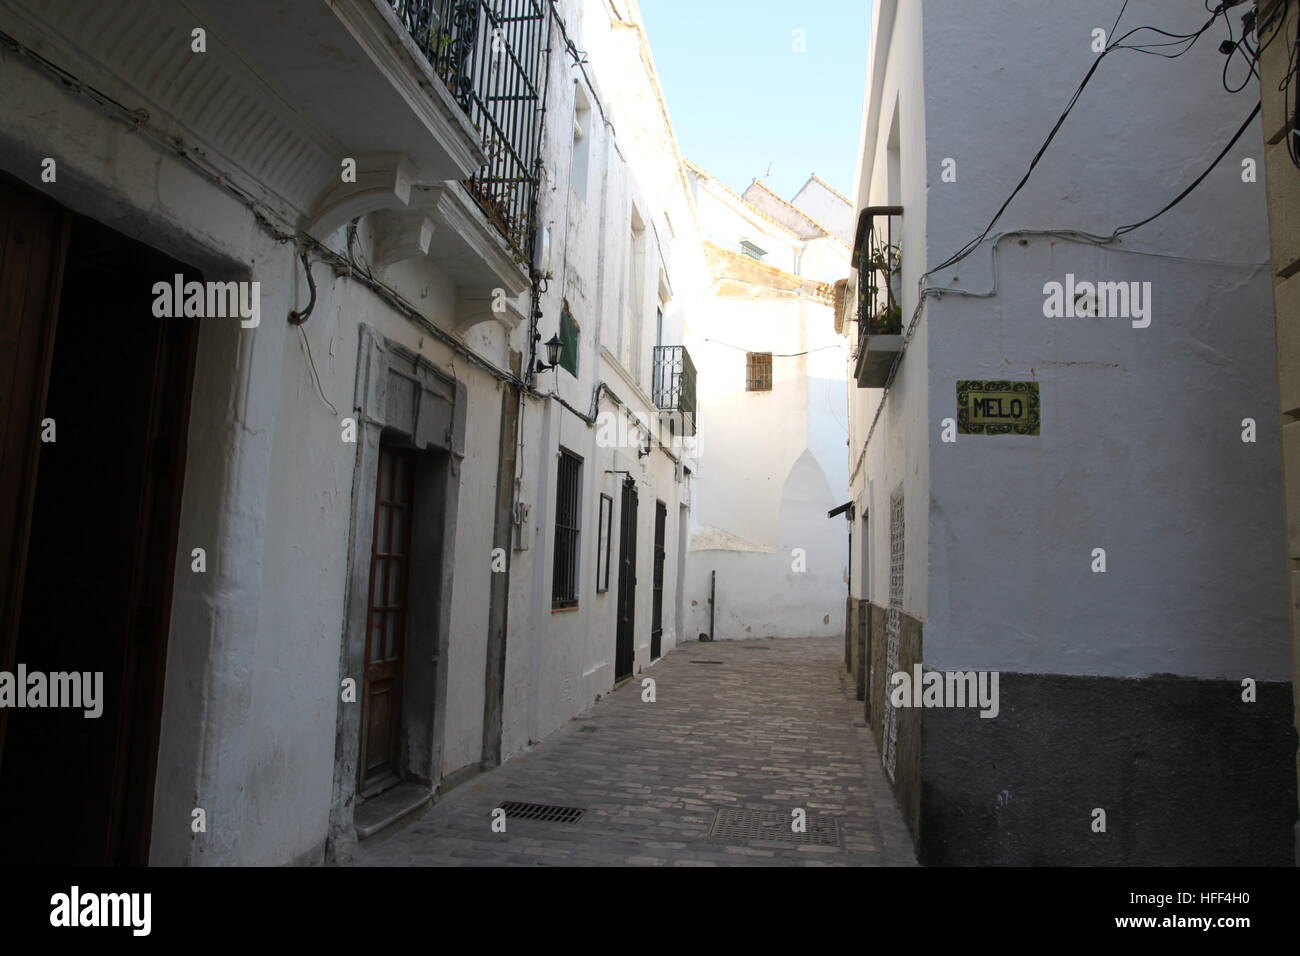 Andalucia,Spagna - 21/02/2012 - Spagna / Andalusia - Tarifa - Sandrine Huet / Le Pictorium Foto Stock